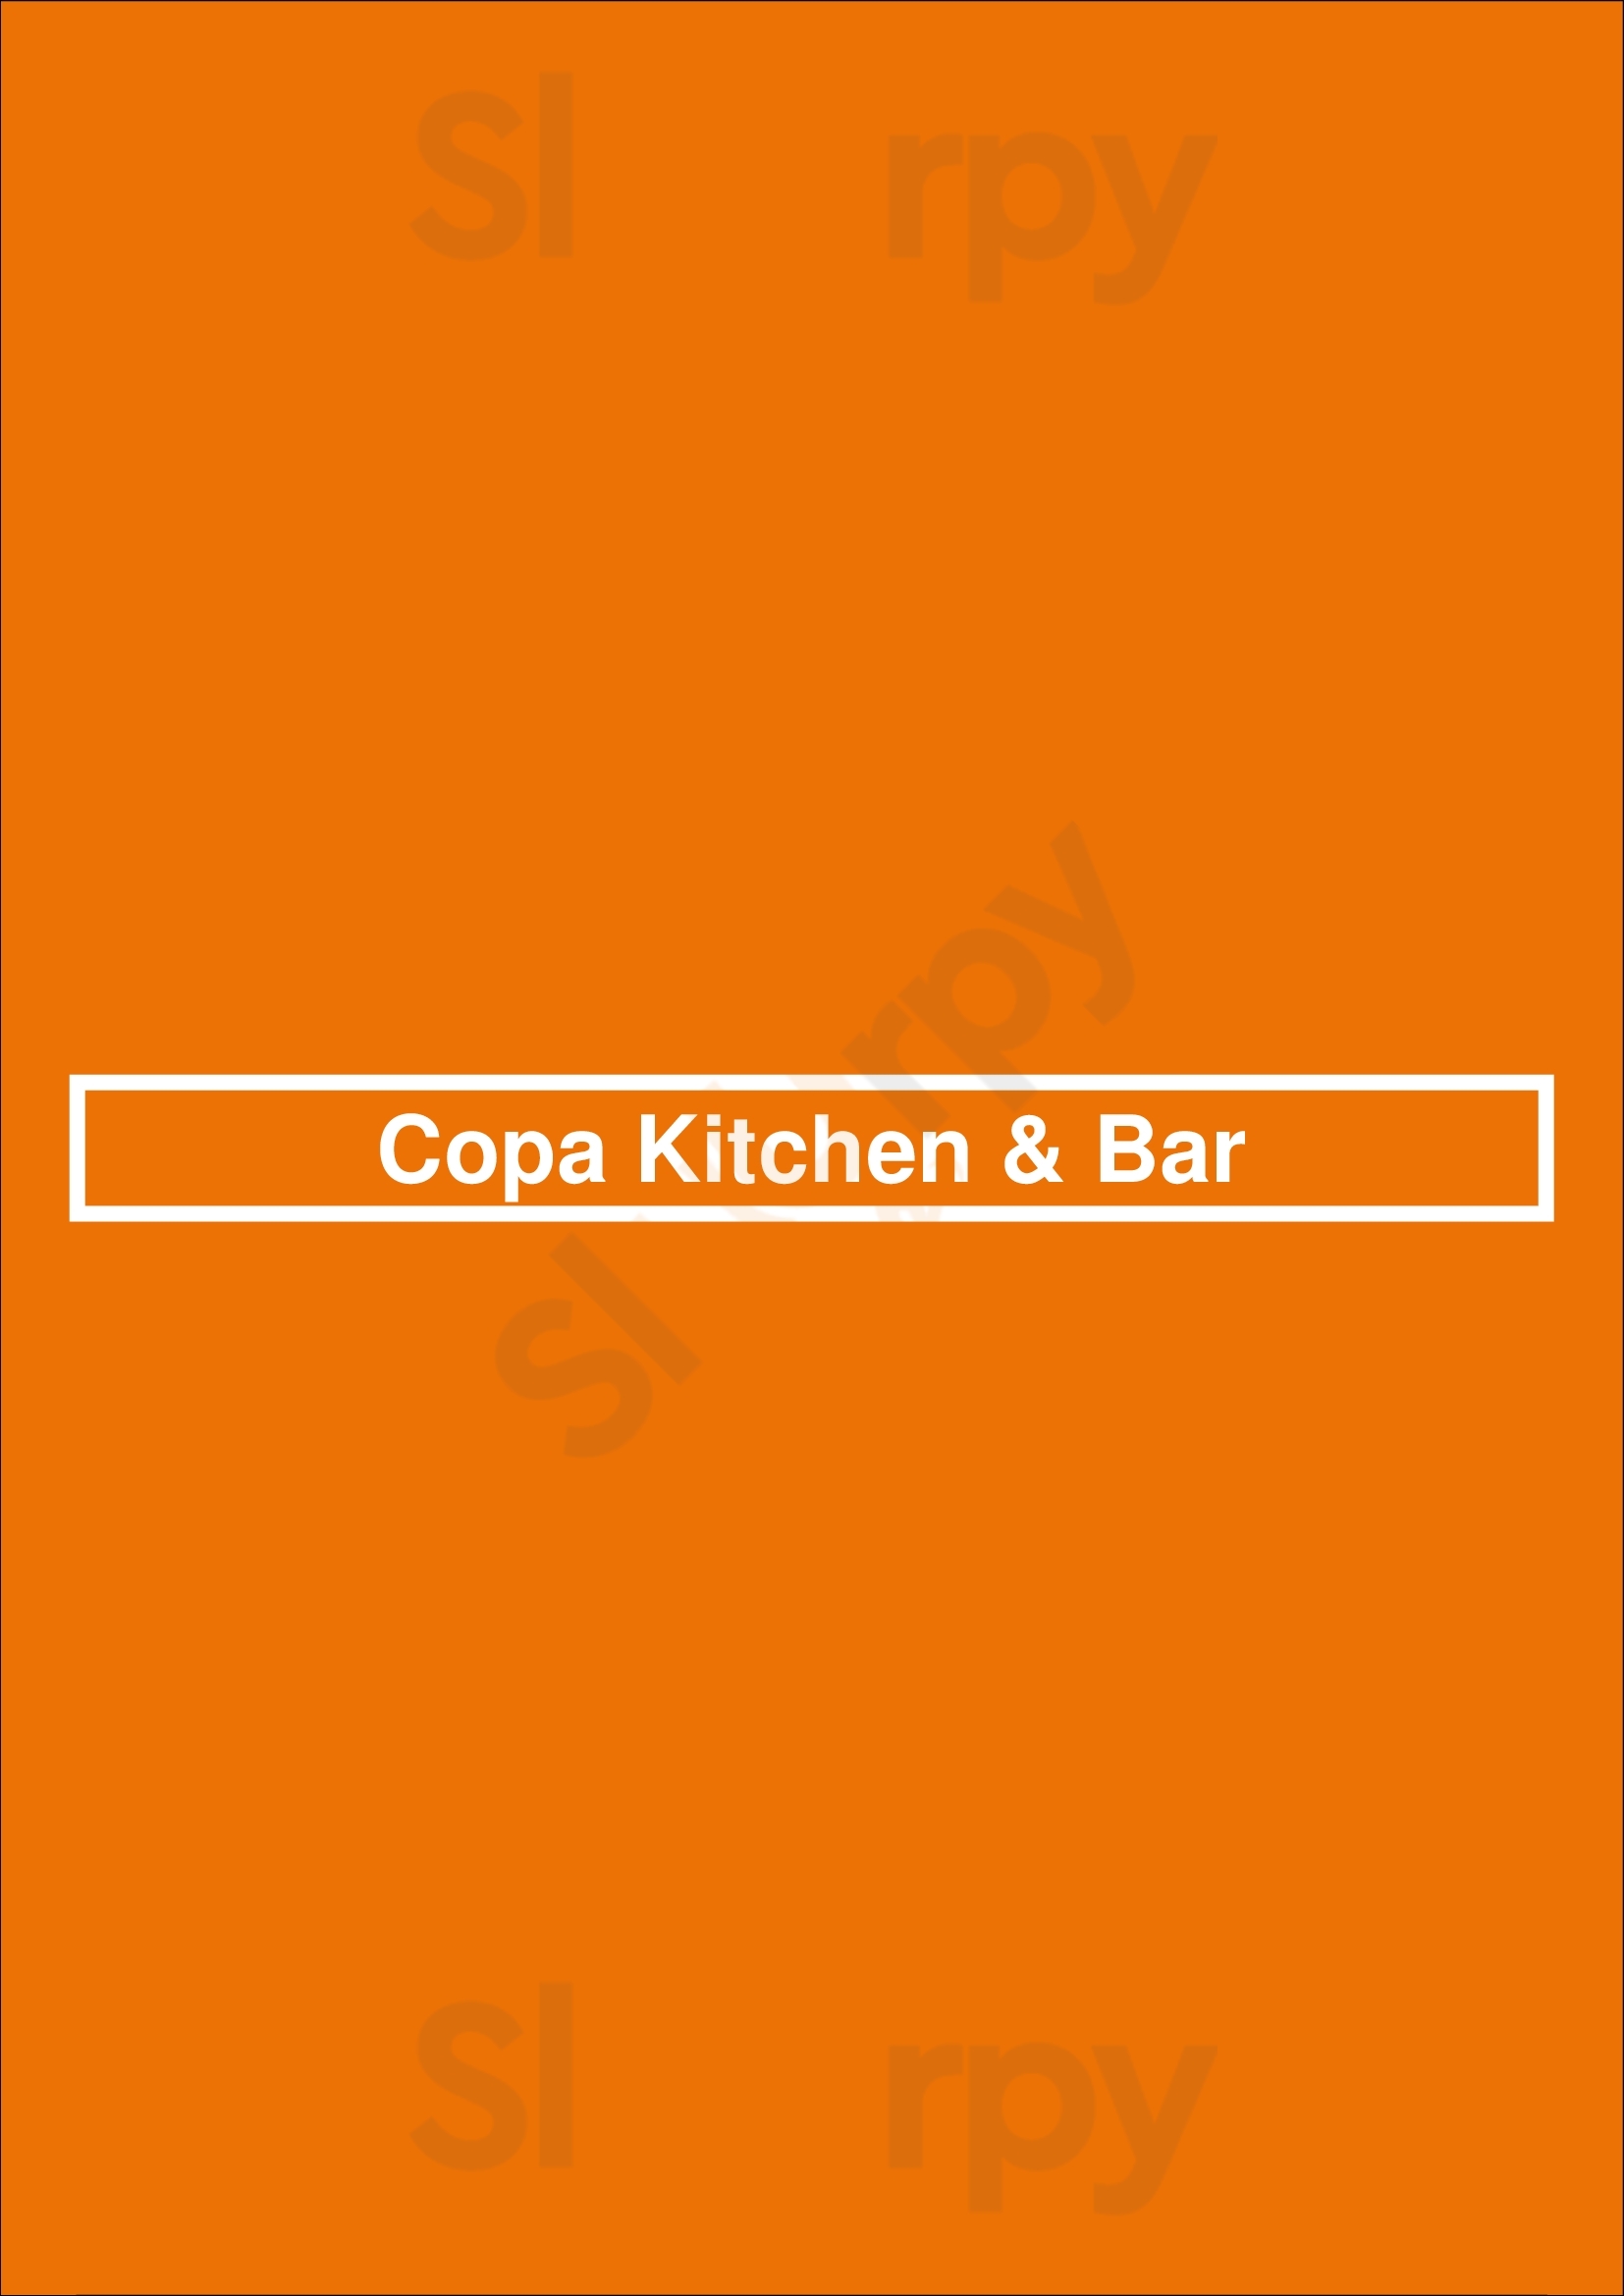 Copa Kitchen & Bar Arlington Menu - 1